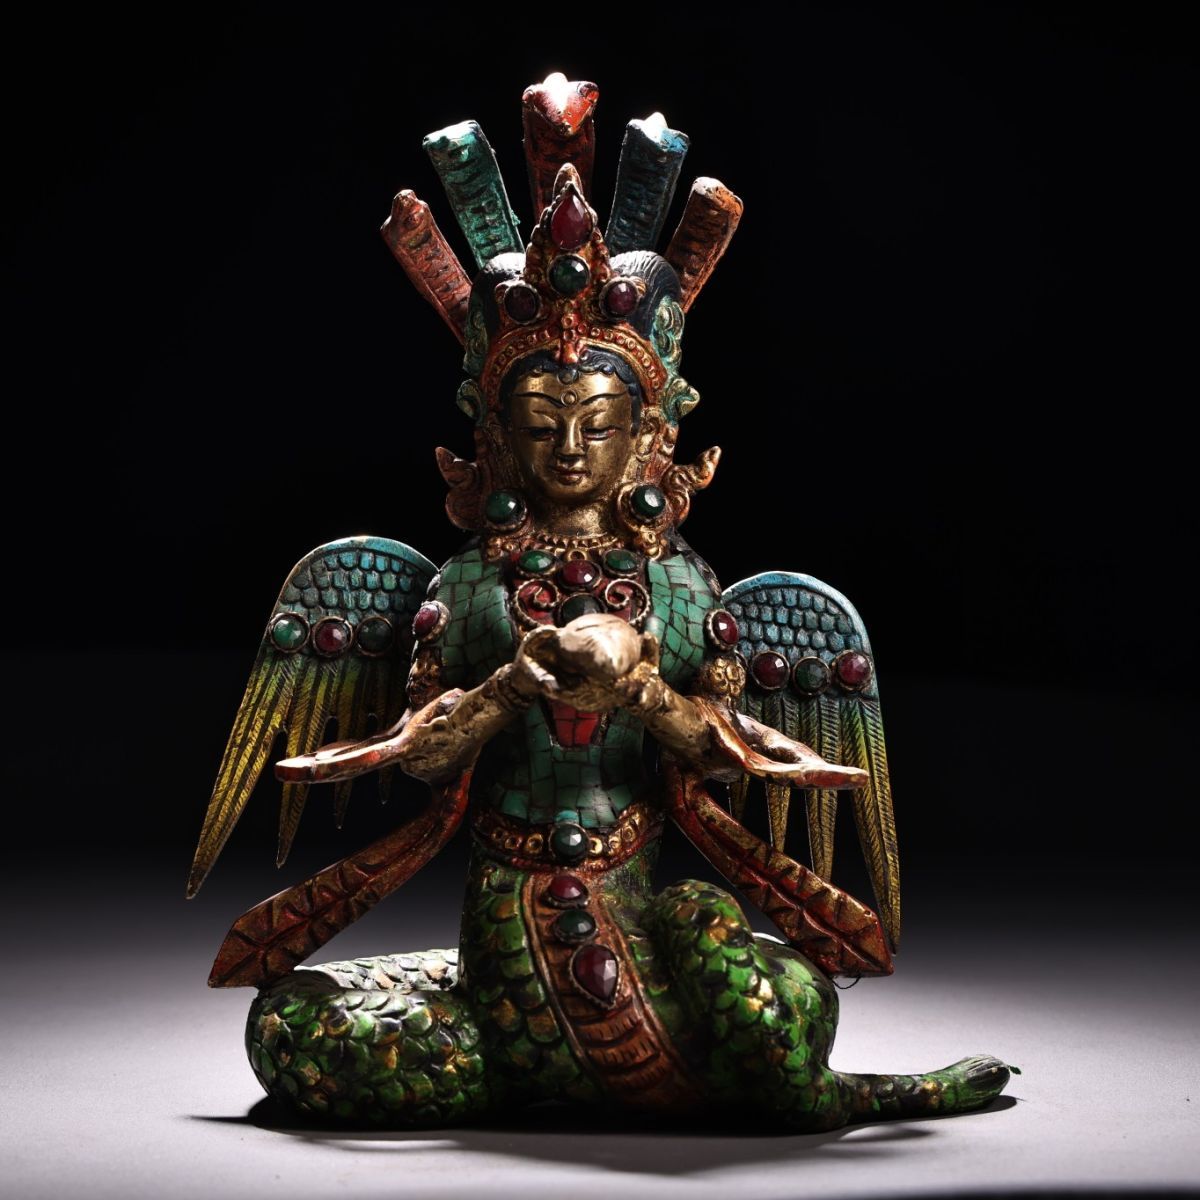 【特価】 魔よけ 銅像 大人気 仏像 lh03 彫刻 チベット伝来 コレクション 仏教 芸術品 伝統 金龍樹菩薩 美術品 飾り 風水 置物 贈り物 開運 祈る 仏像